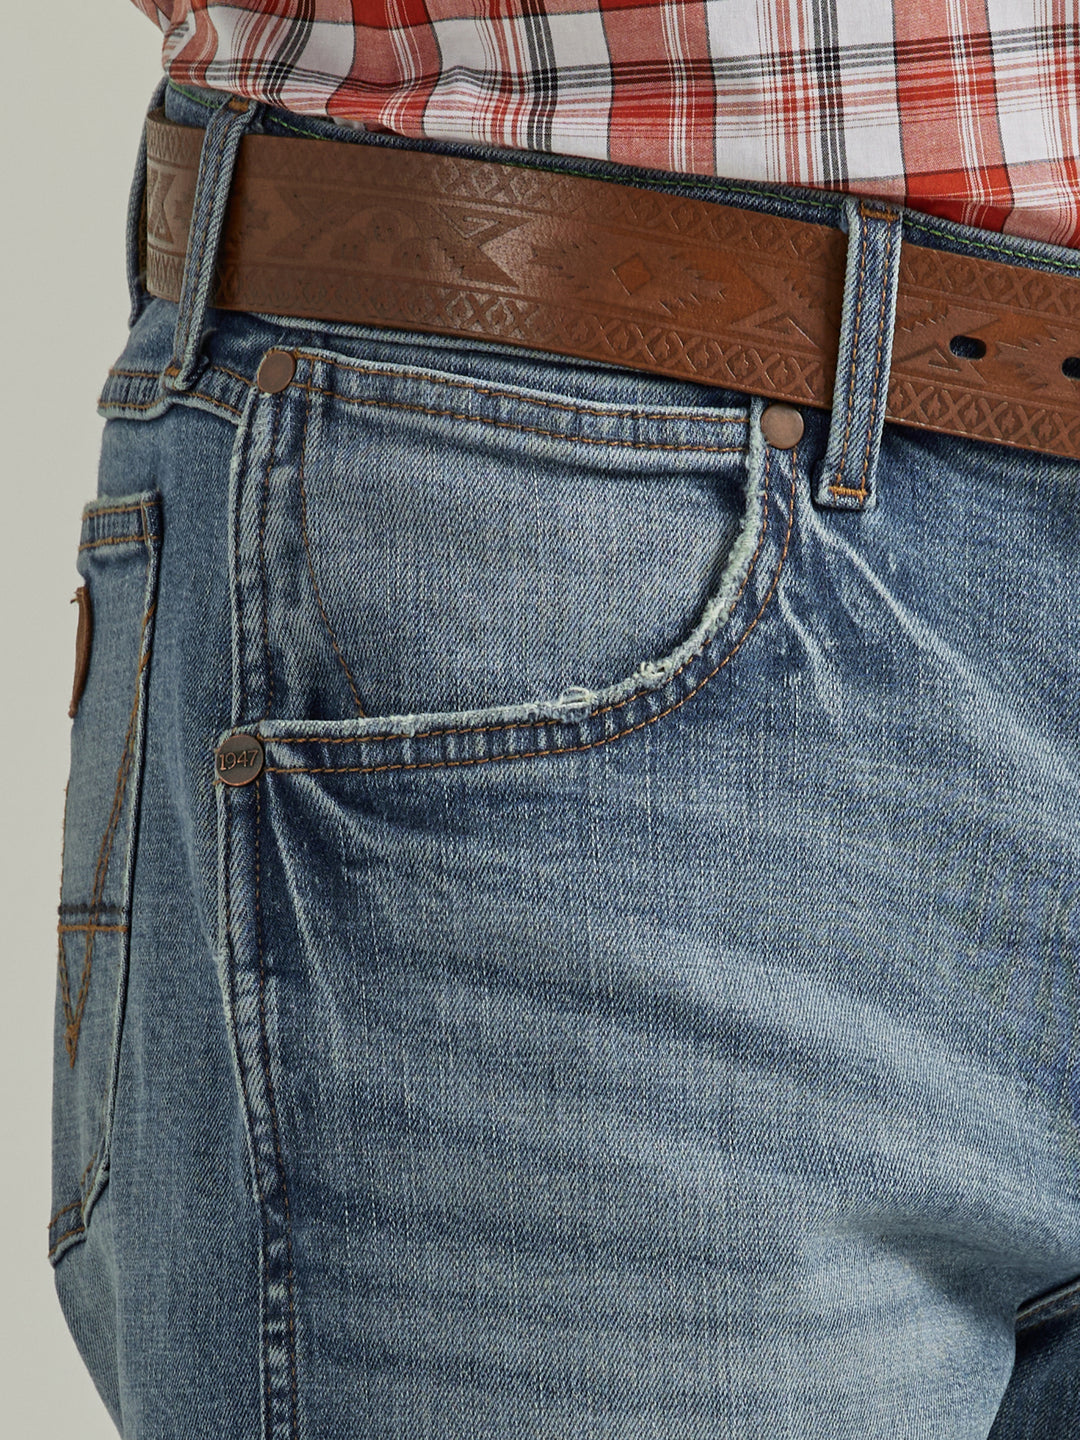 Wrangler Men's Retro Slim Straight Jean